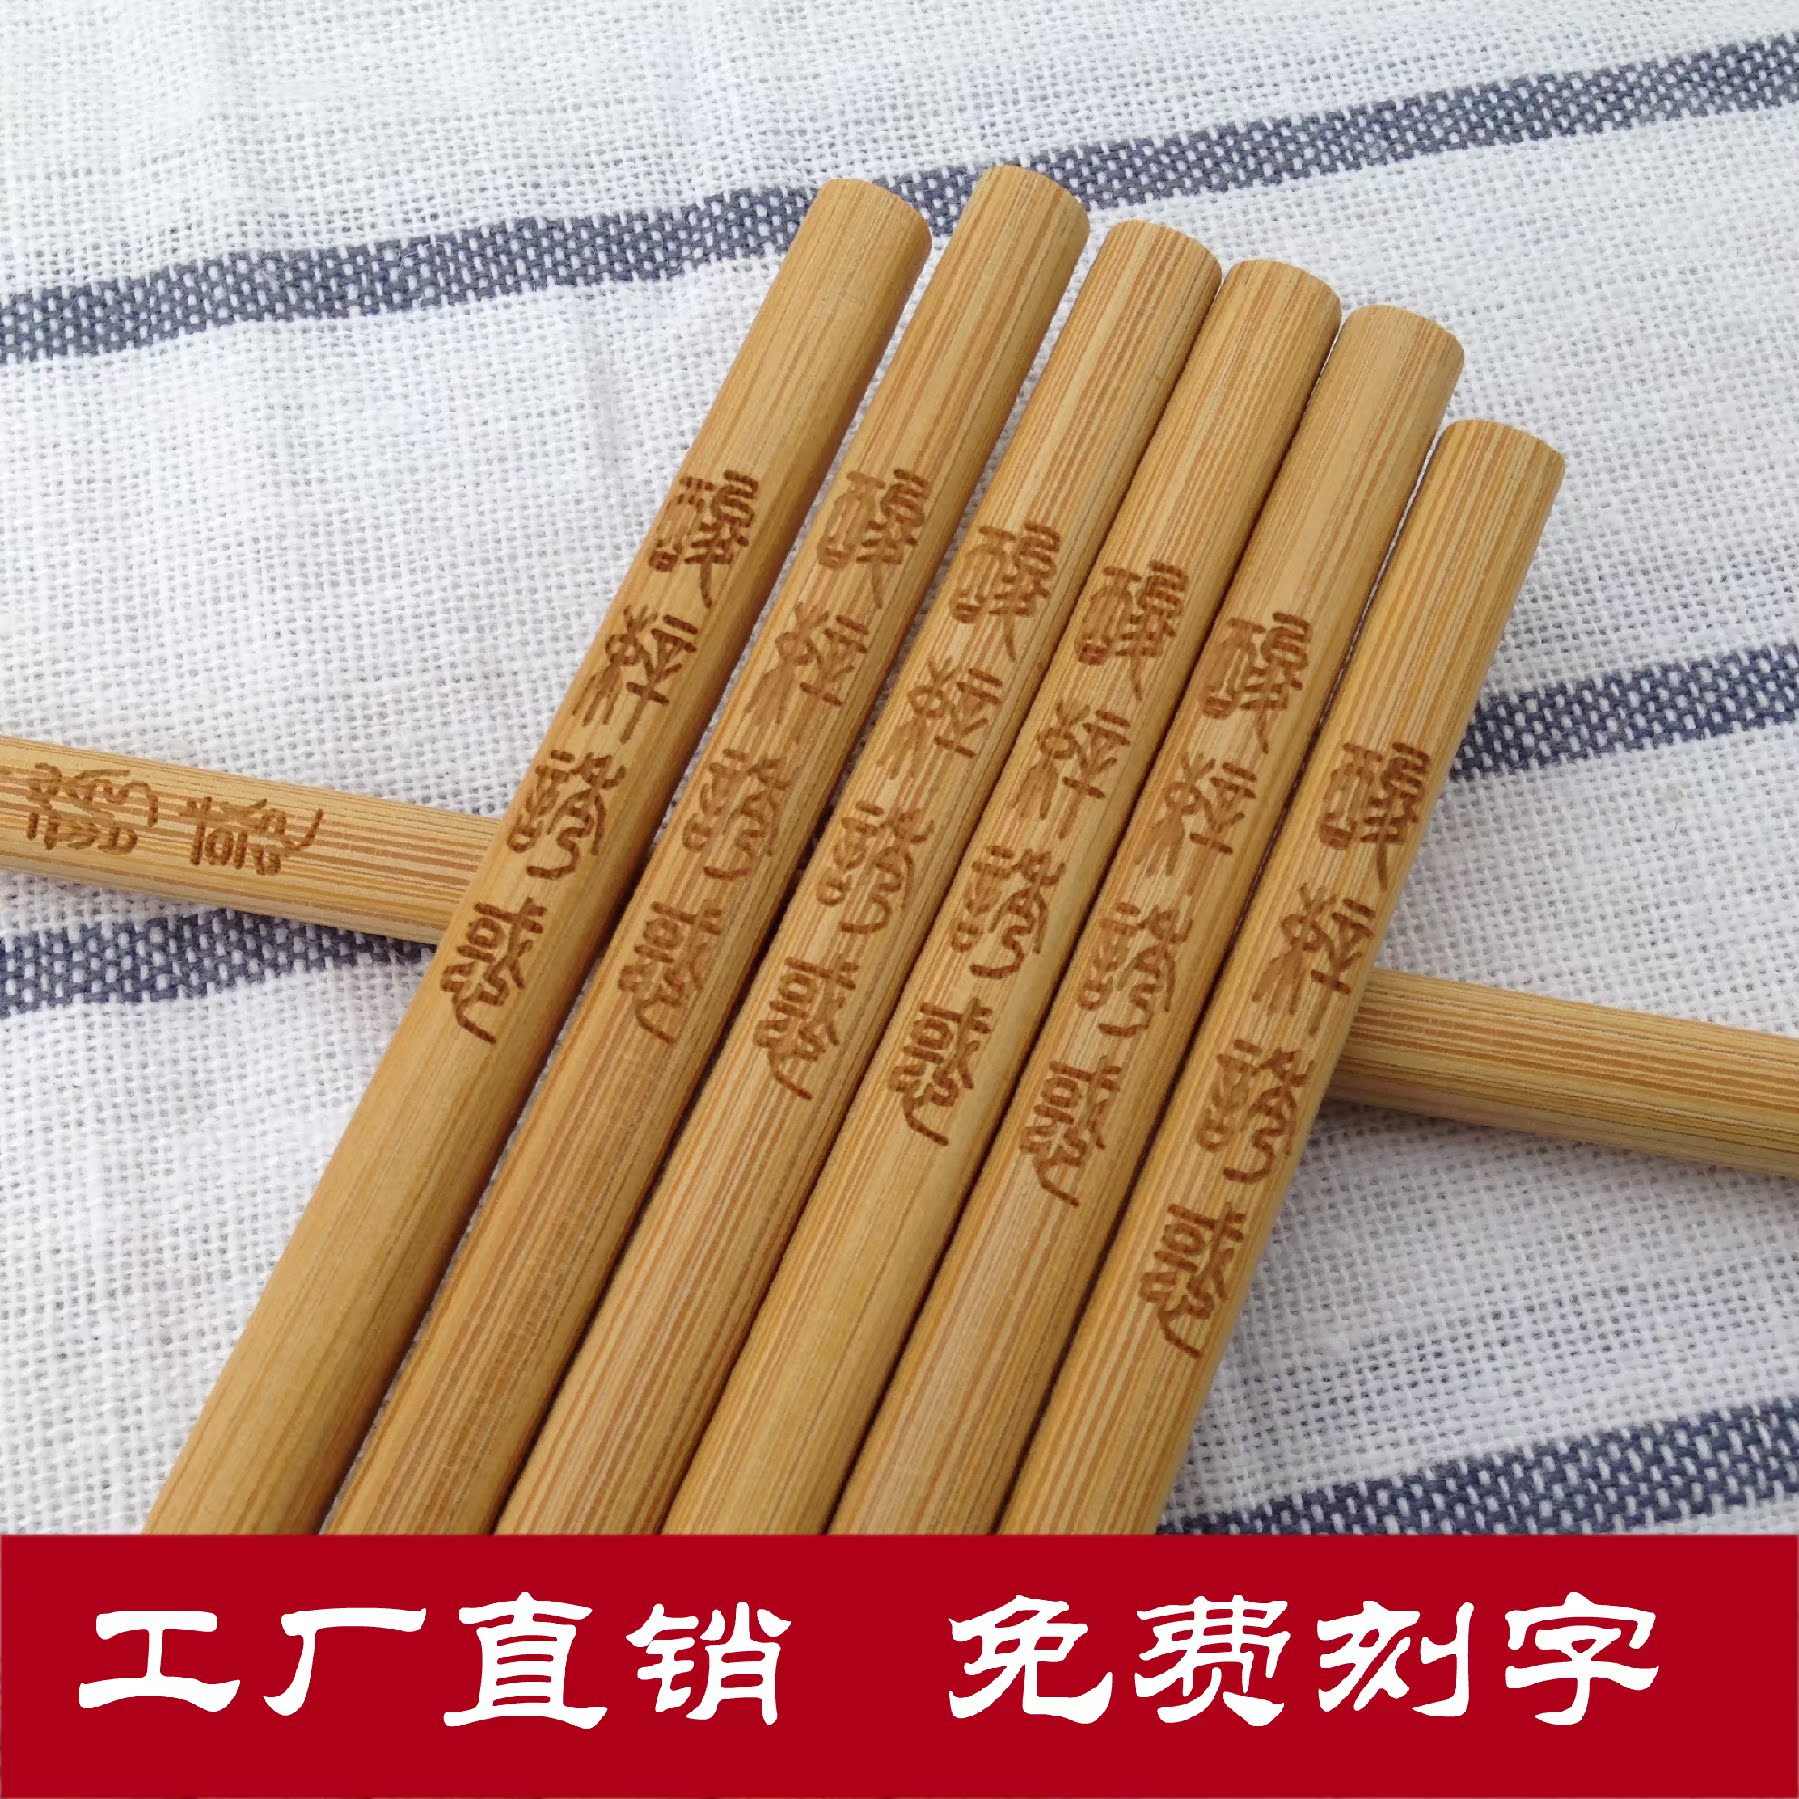 火锅店专用筷子加长30CM海底捞面筷无漆防霉环保天然竹筷子